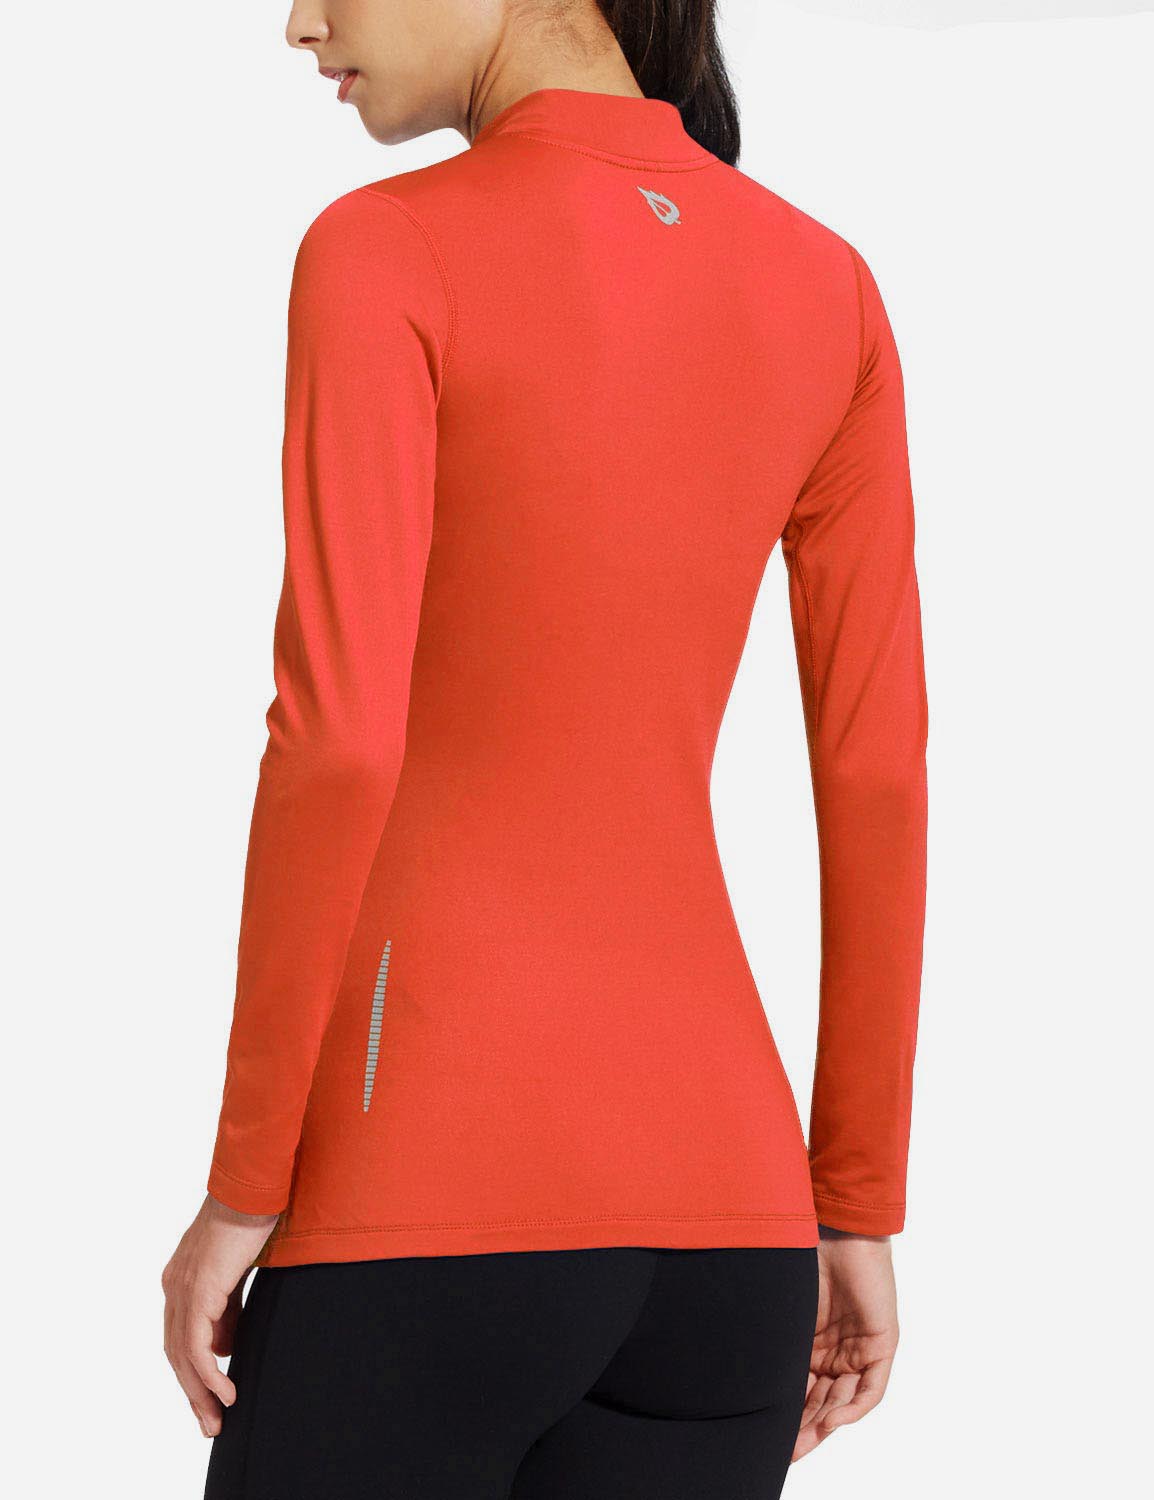 Baleaf Women's Basic Compression Mock-Neck Long Sleeved Shirt abd166 Coral Side